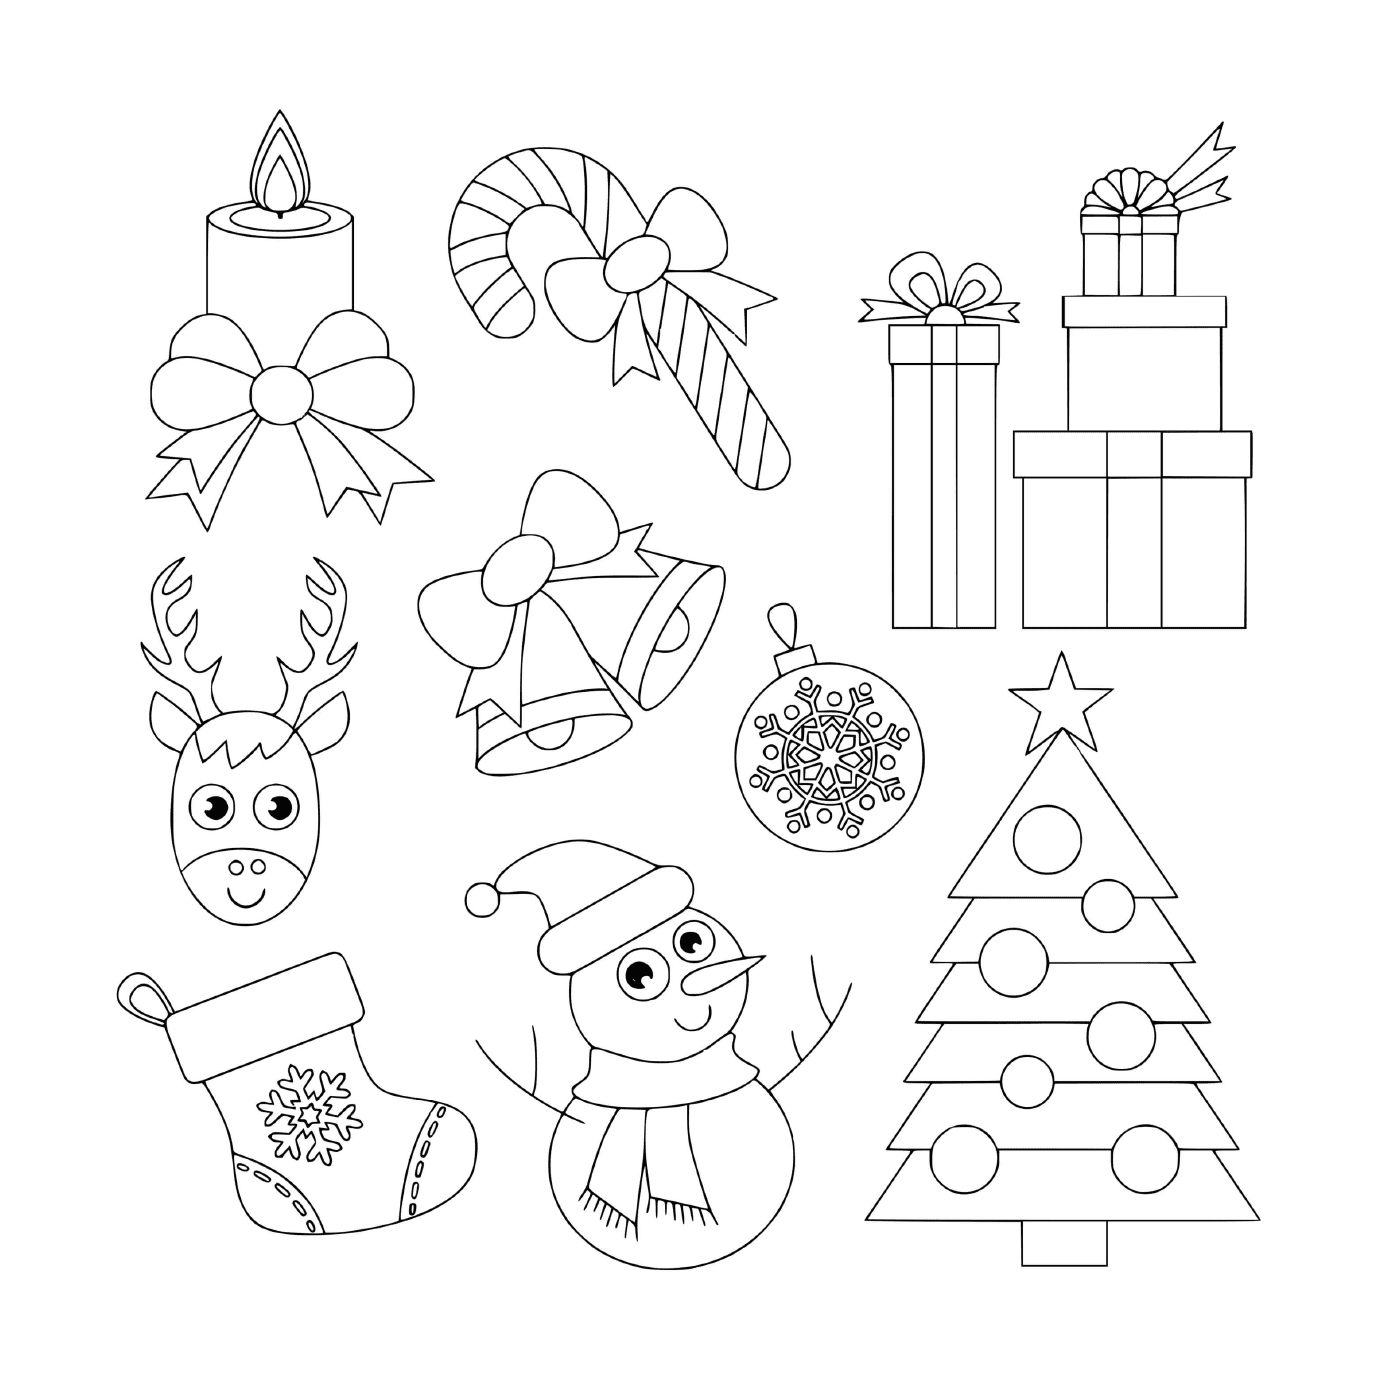  Sammlung von Weihnachtszeichnungen für Kinder im Vor- und Kindergarten 